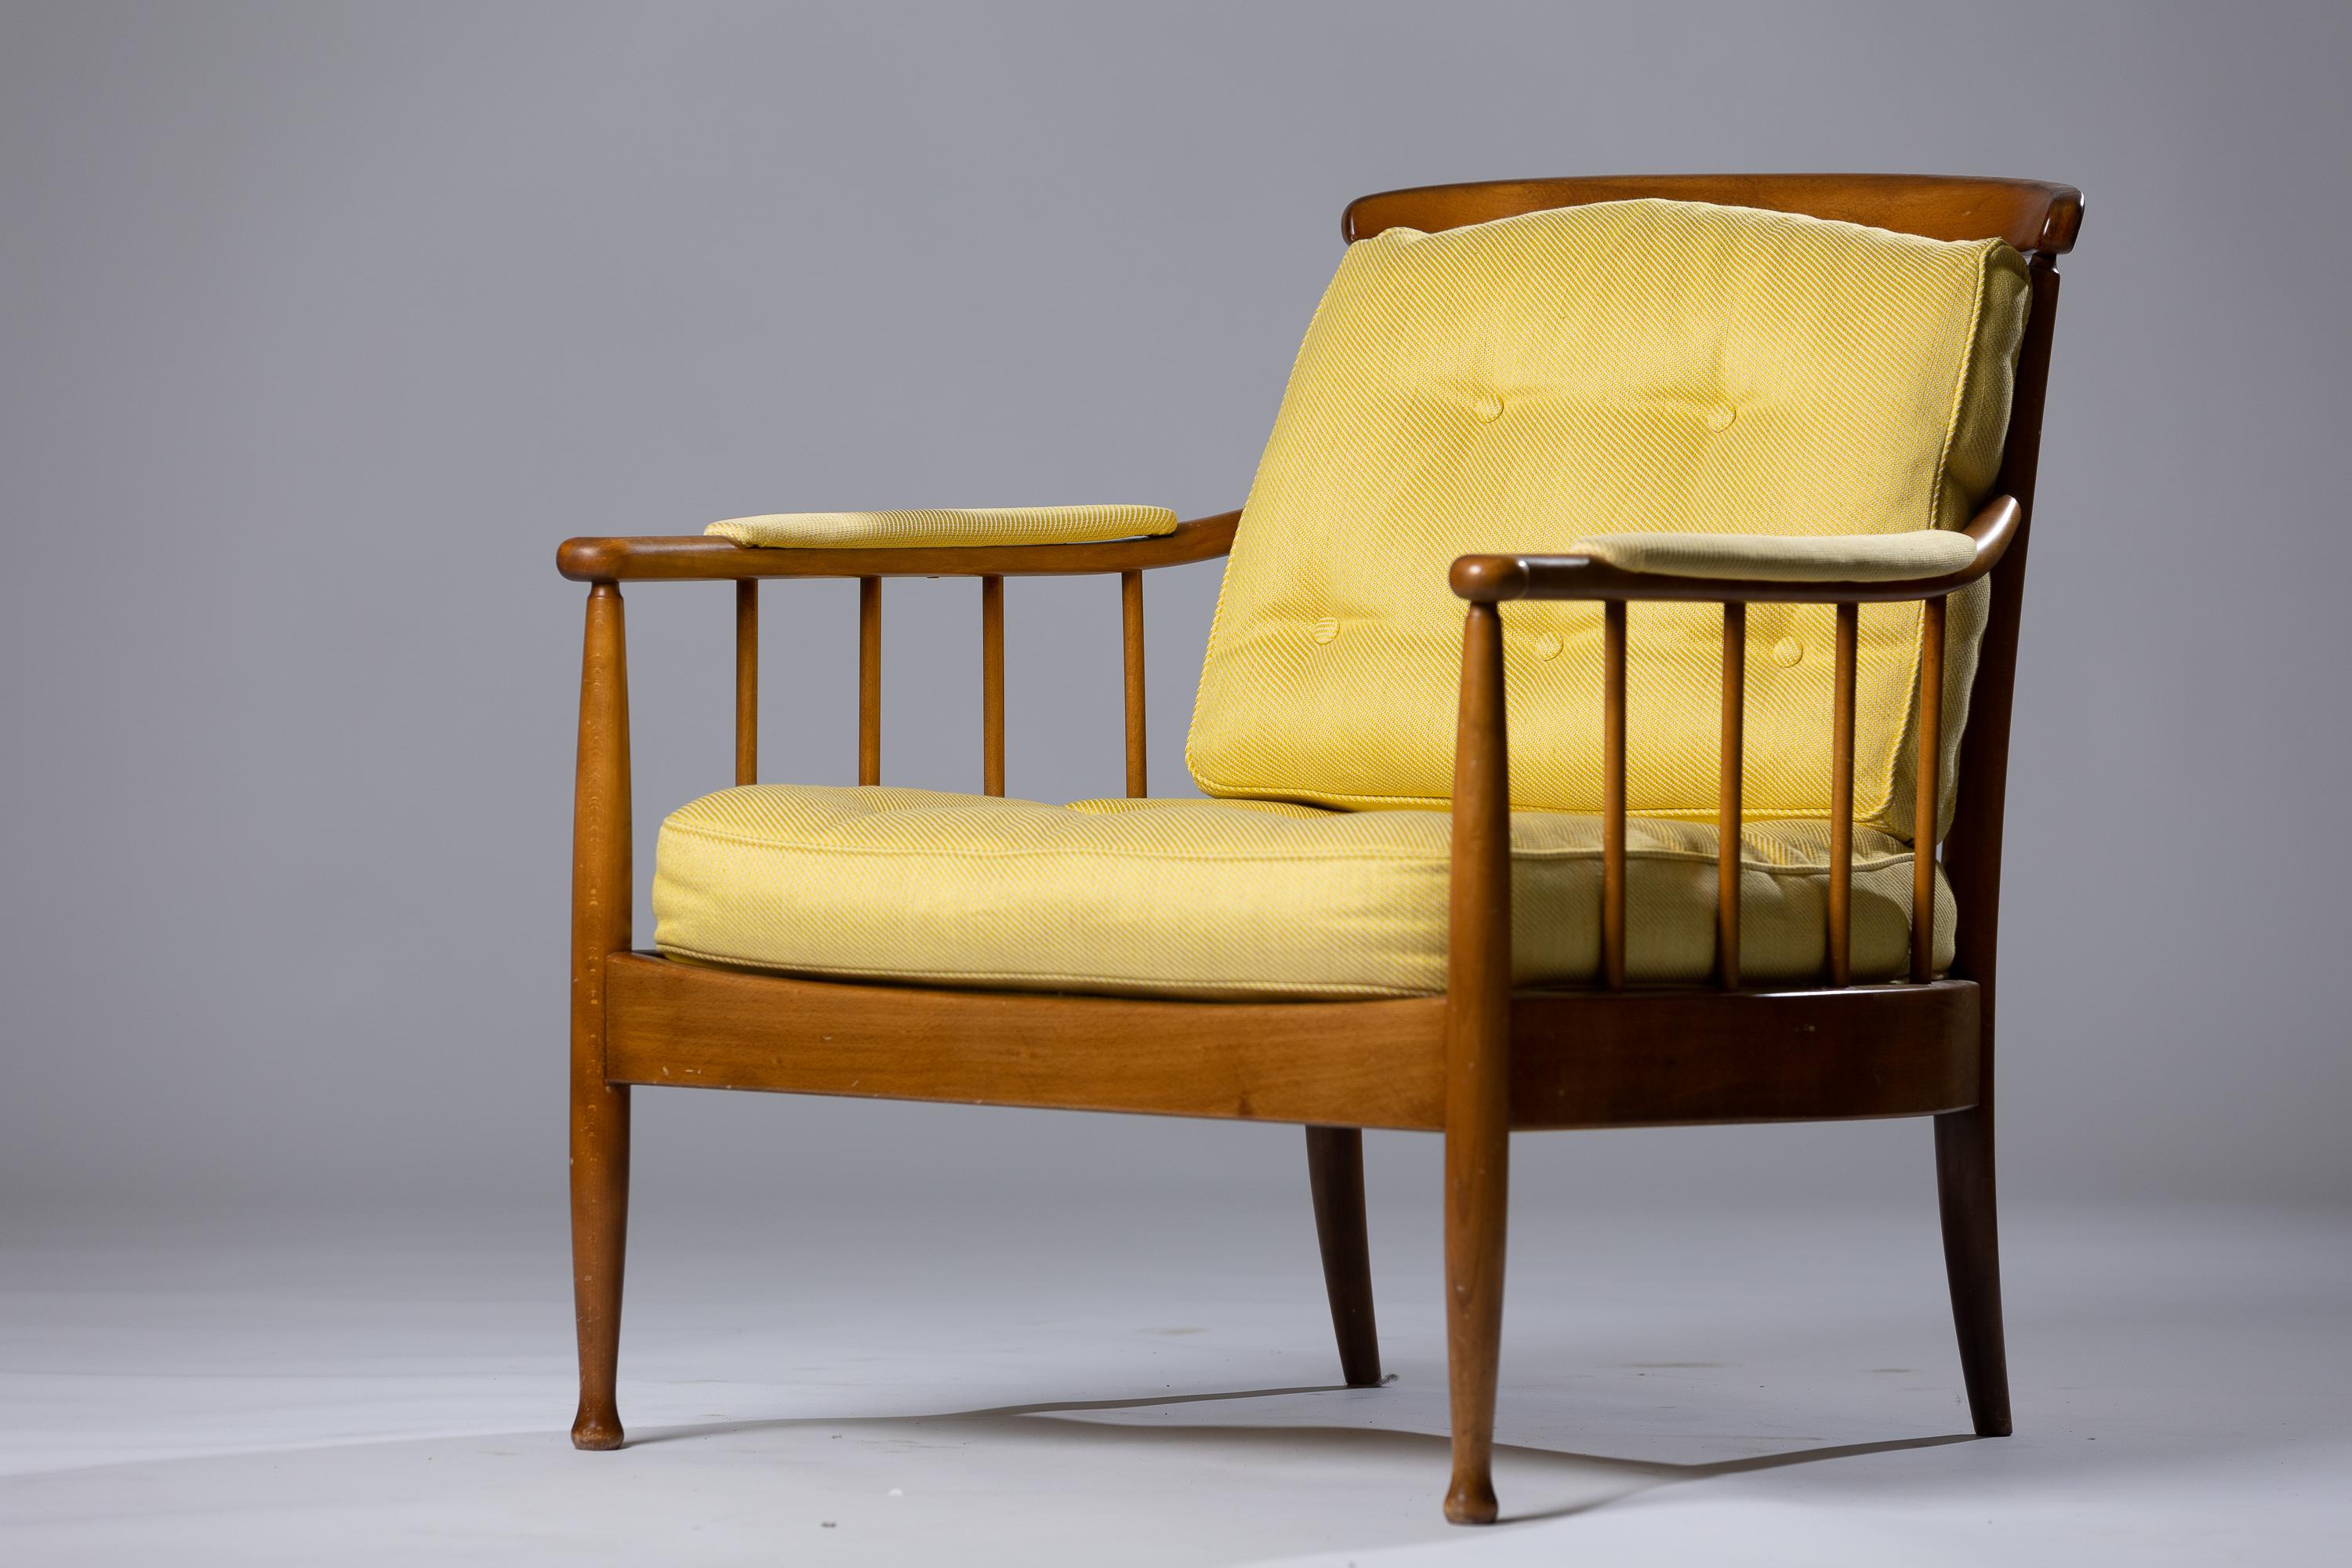 Voici le fauteuil Skrindan de la célèbre designer Kerstin Hörlin Holmqvist. Cette pièce remarquable associe un savoir-faire exquis à une élégance intemporelle, ce qui en fait un incontournable pour les amateurs d'intérieur exigeants. Le fauteuil